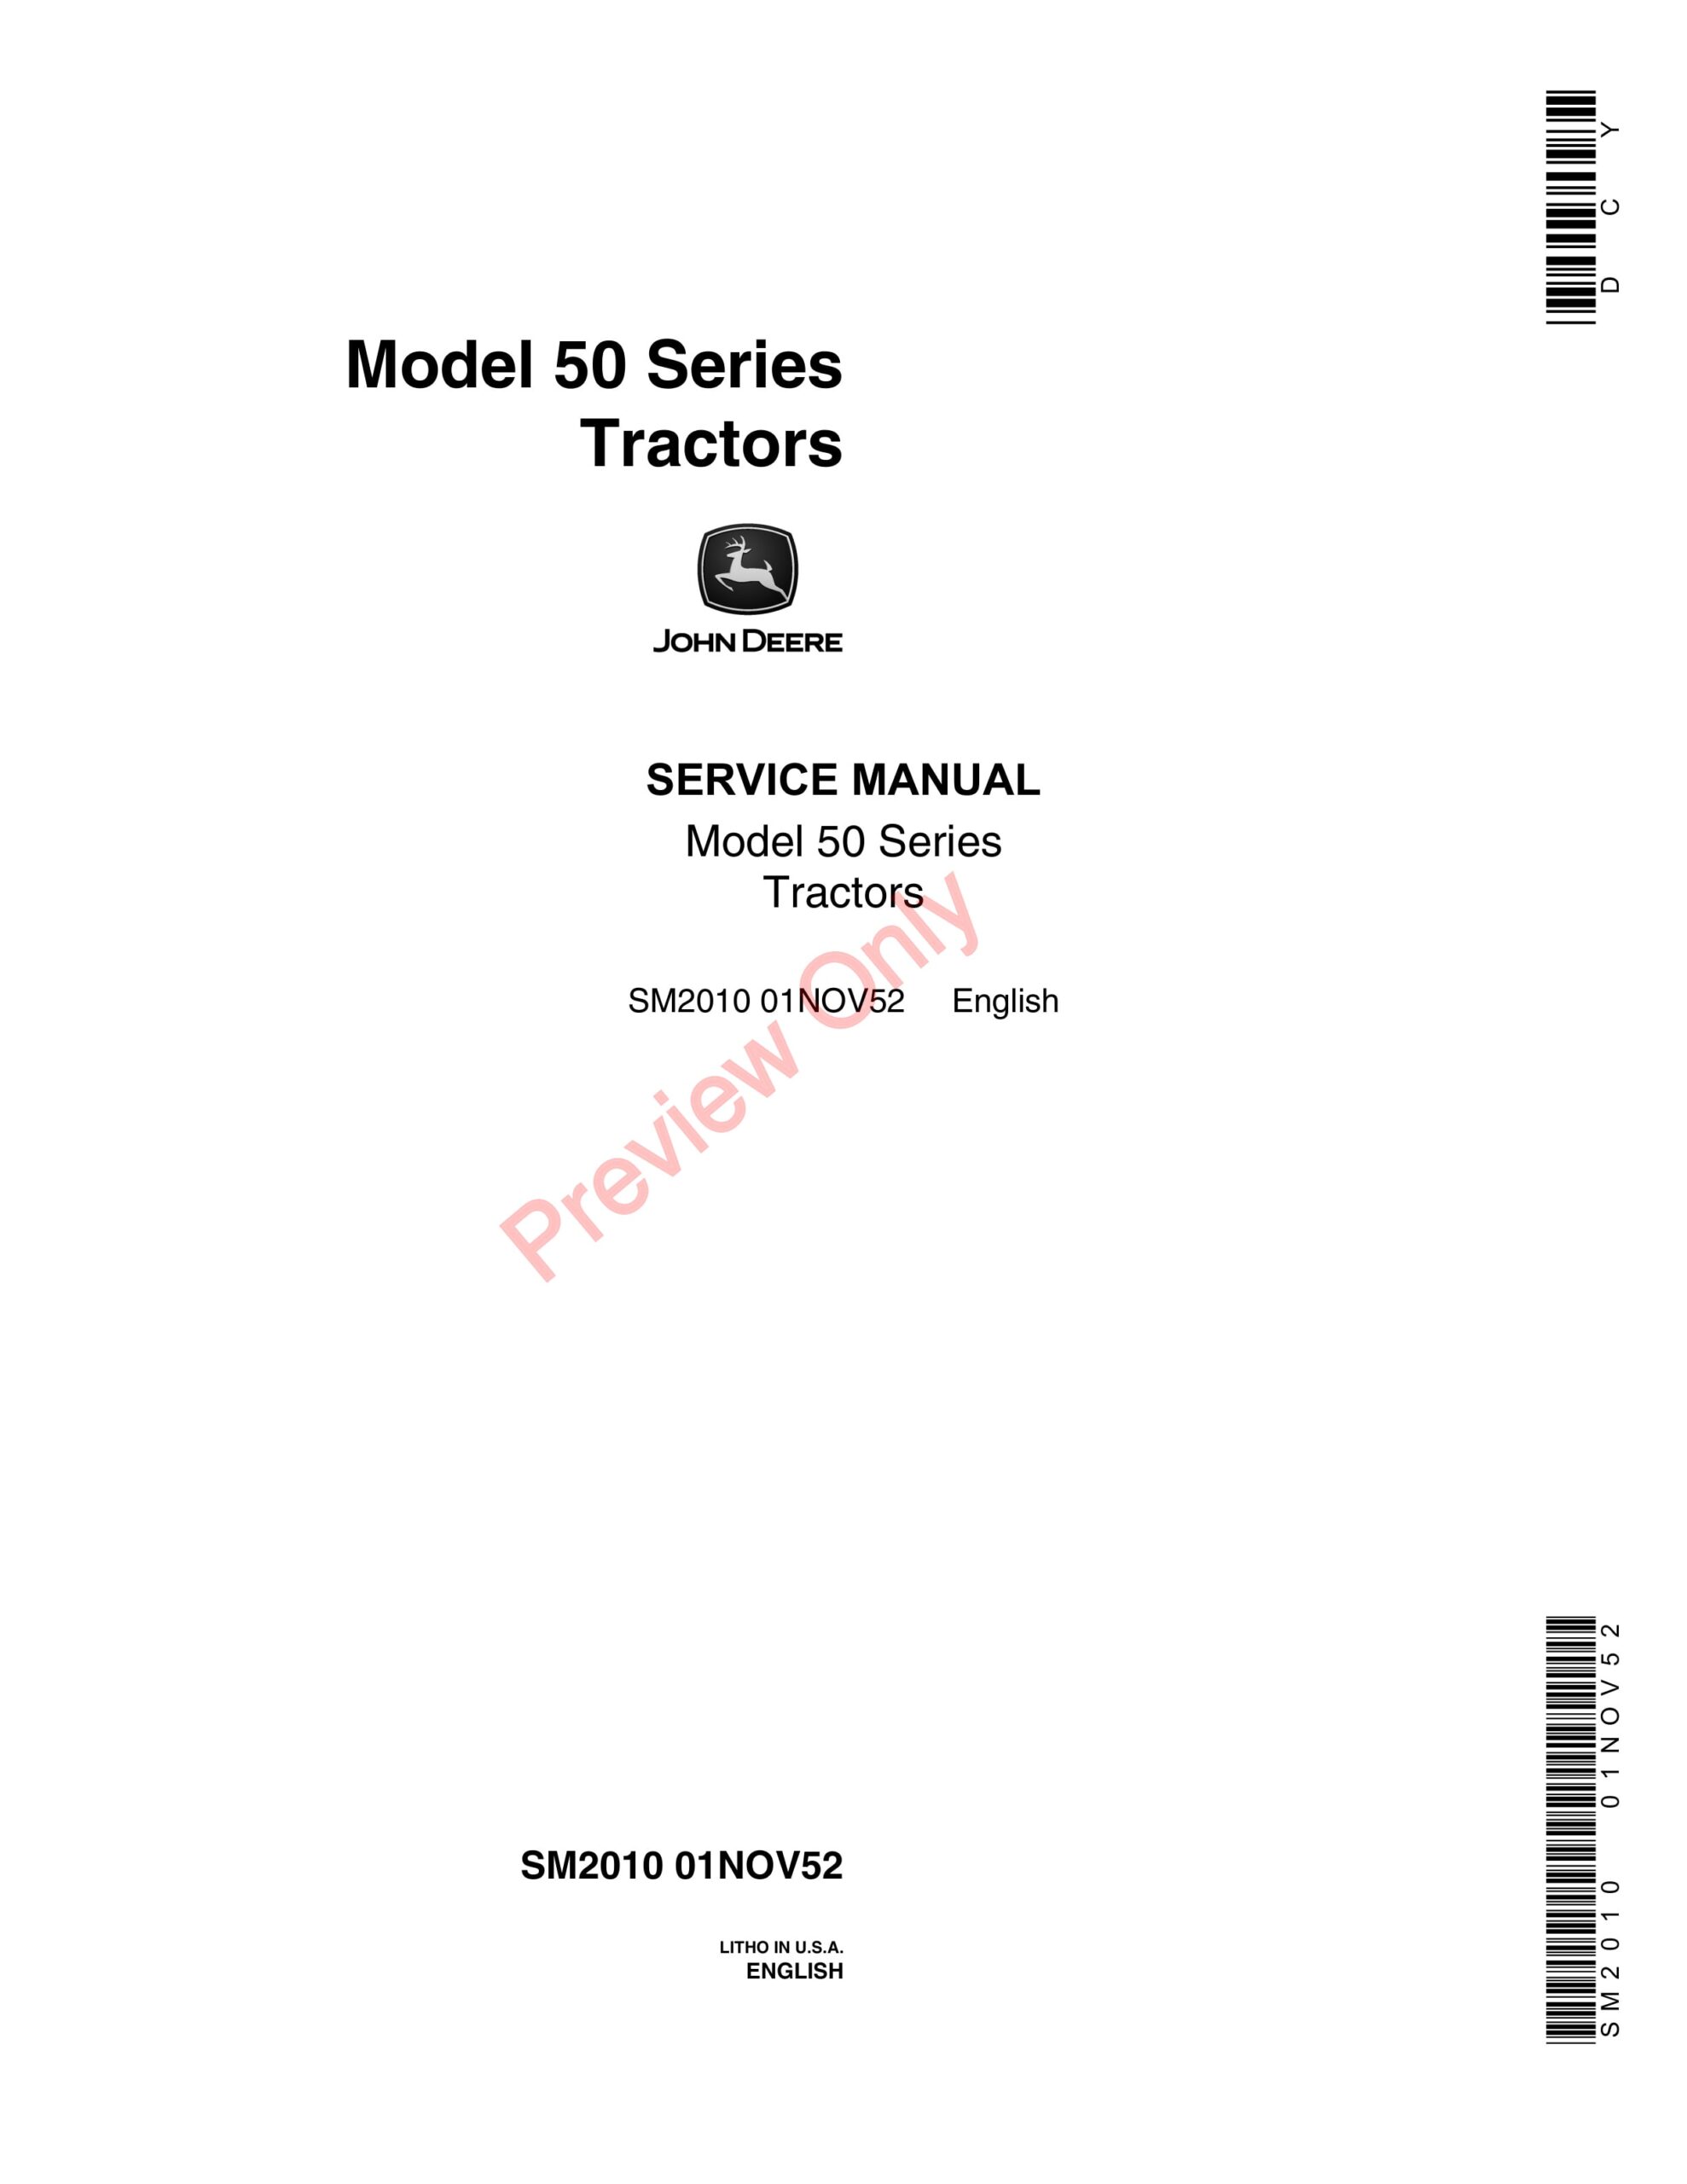 John Deere Model 50 Series Tractors Service Manual SM2010 01NOV52-1